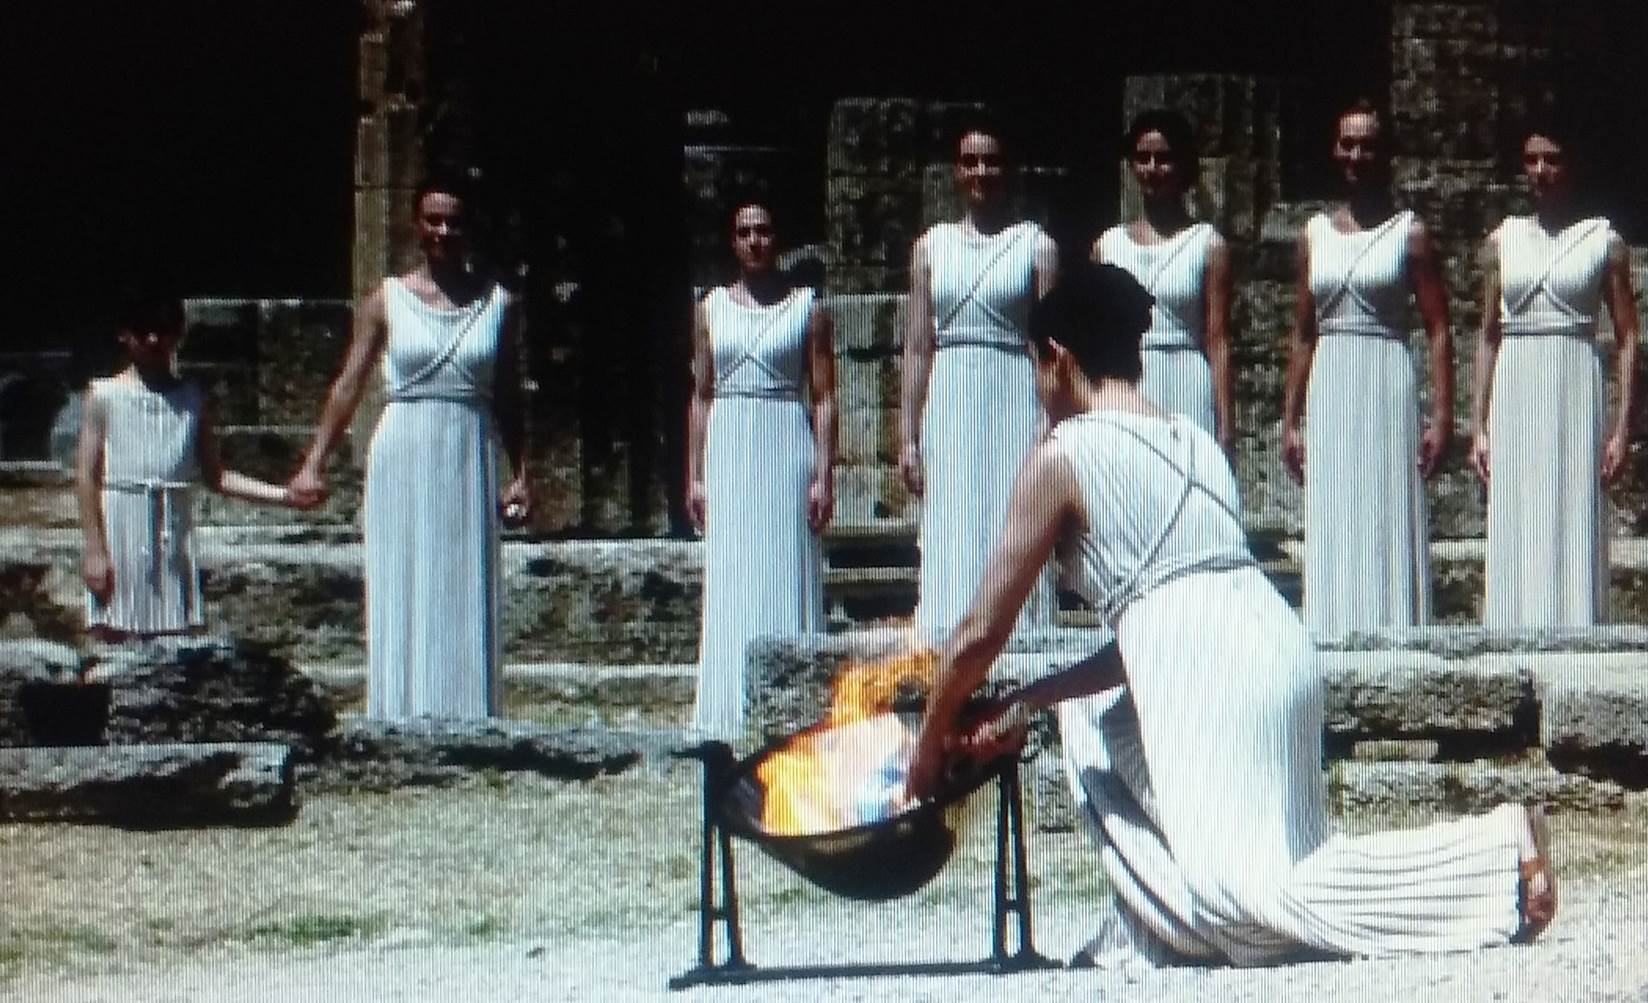 como eram os Jogos Olímpicos na Antiguidade: adoração a deuses